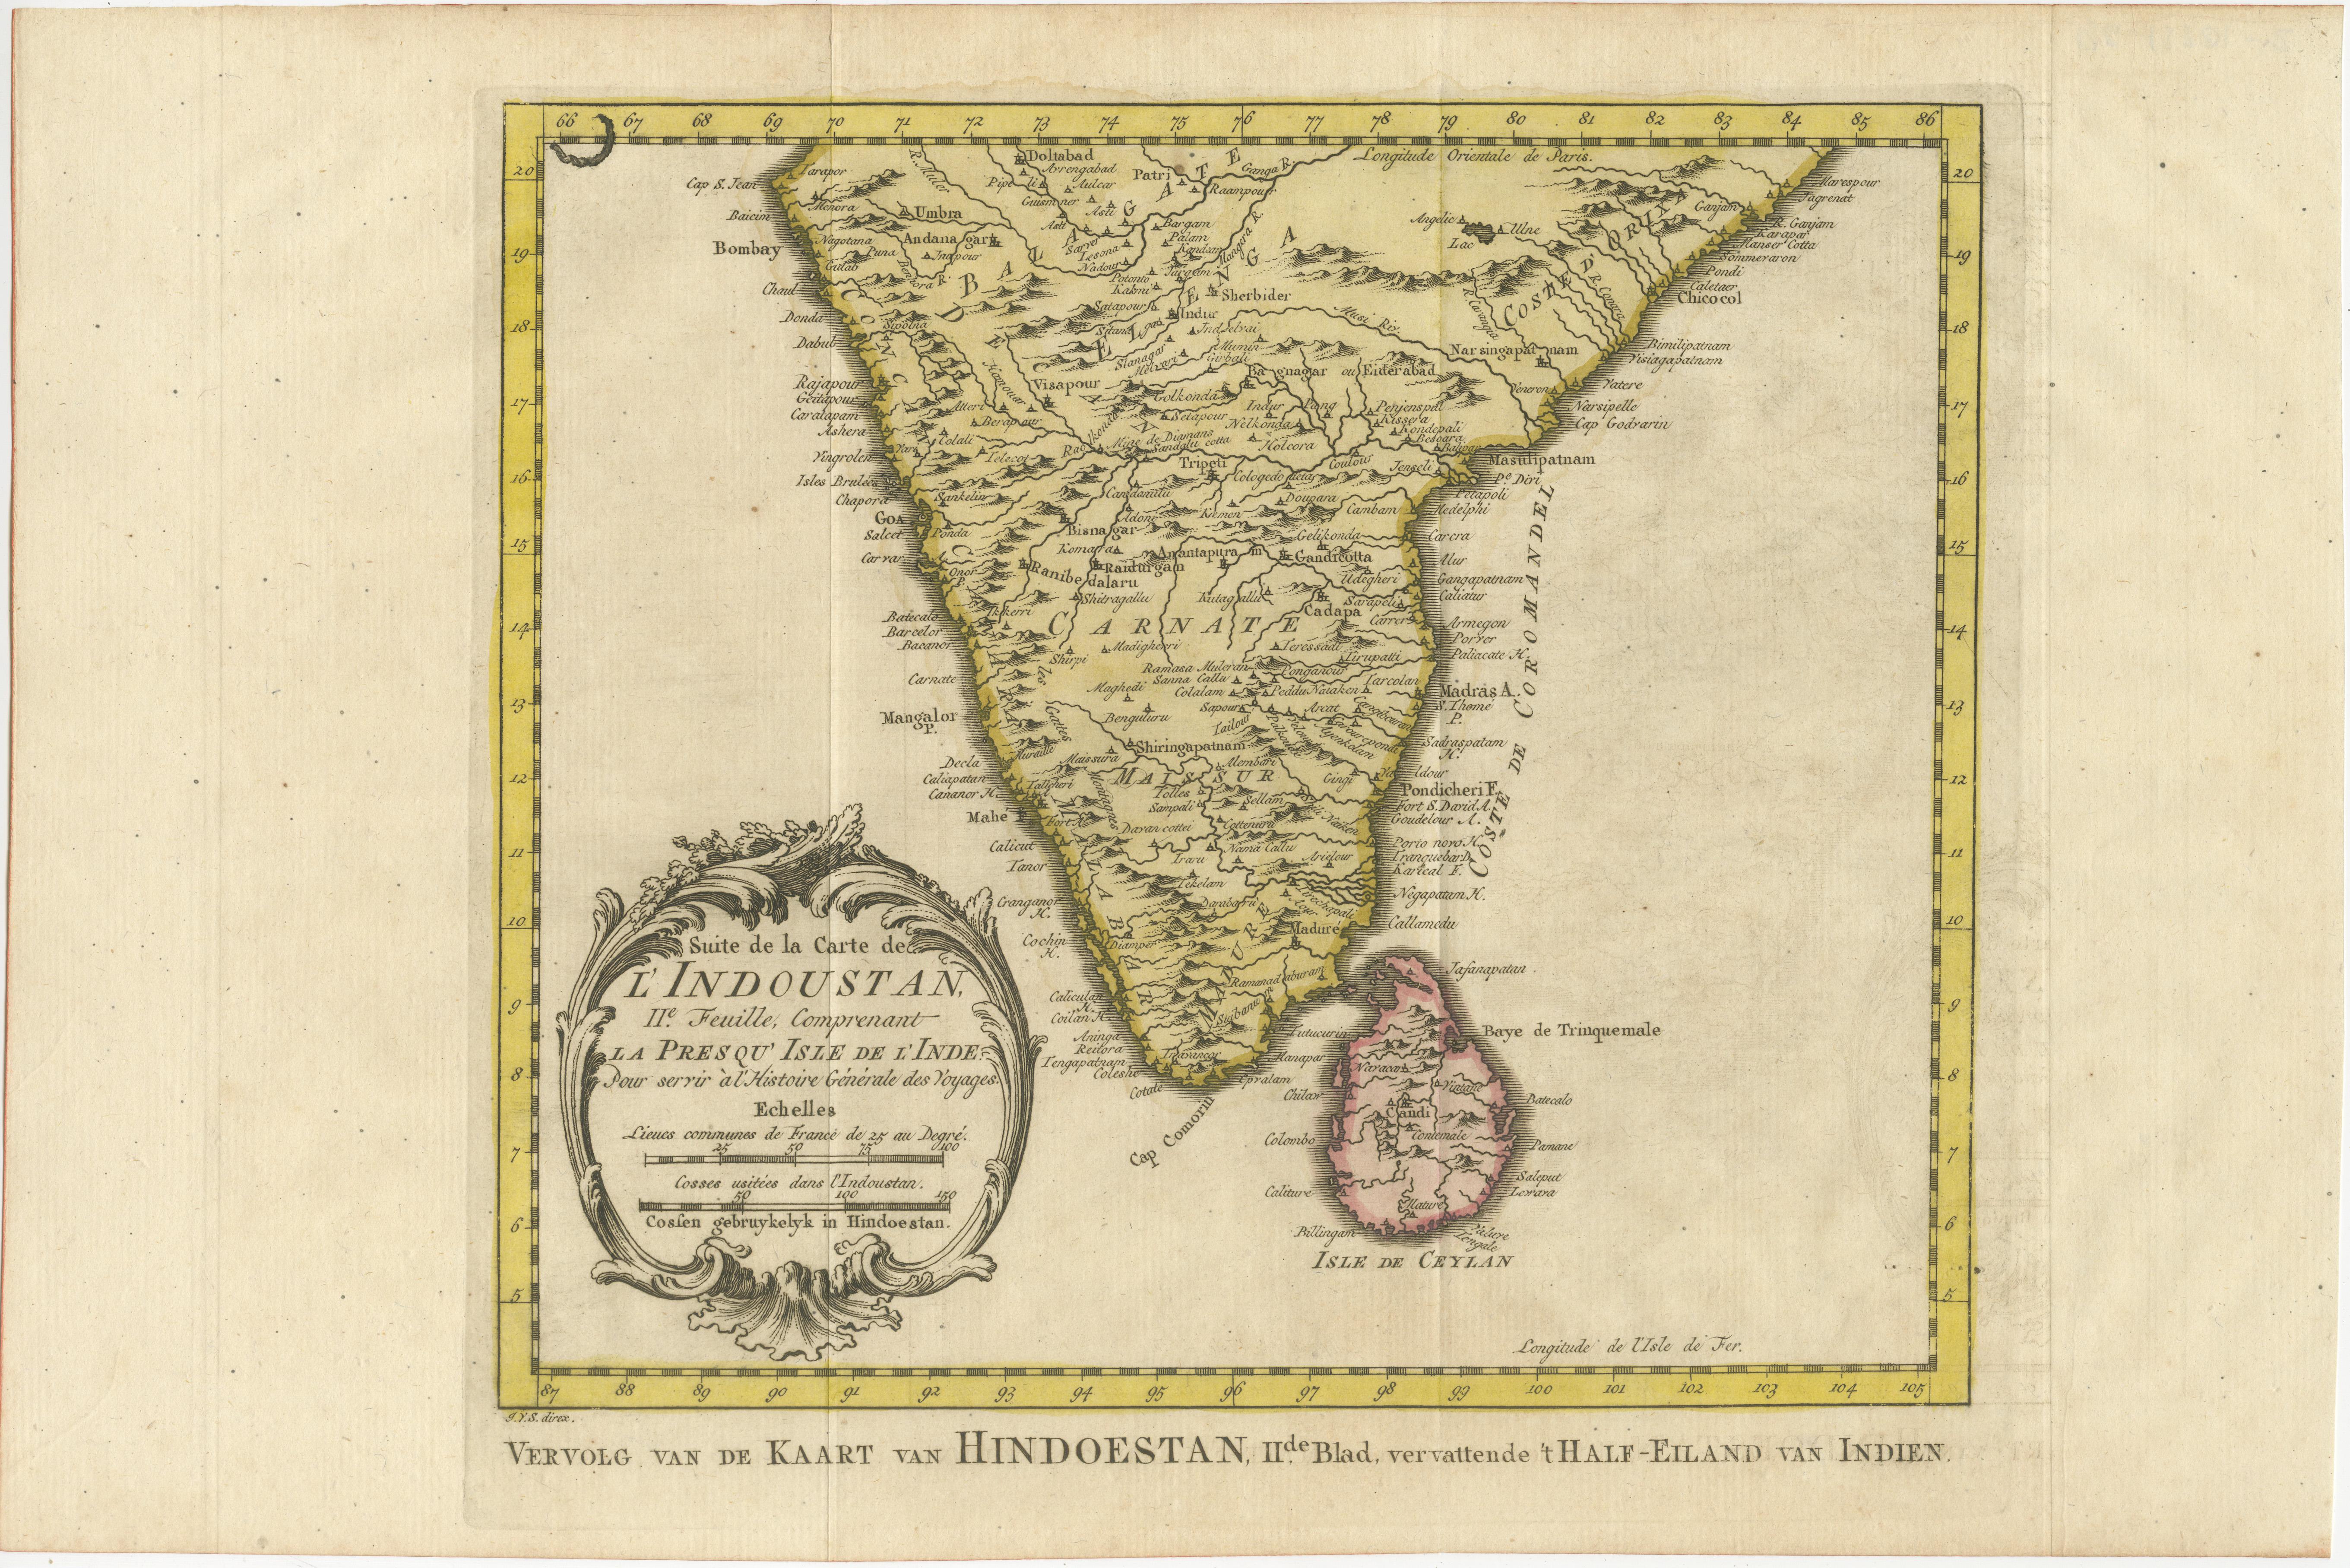 Antique map titled 'Suite de la Carte de l'Indoustan (..) - Vervolg van de Kaart van Hindoestan (..)'. Original antique map of Southern India and Ceylon (present-day Sri Lanka). This map originates from 'Historische beschryving der reizen, of Nieuwe